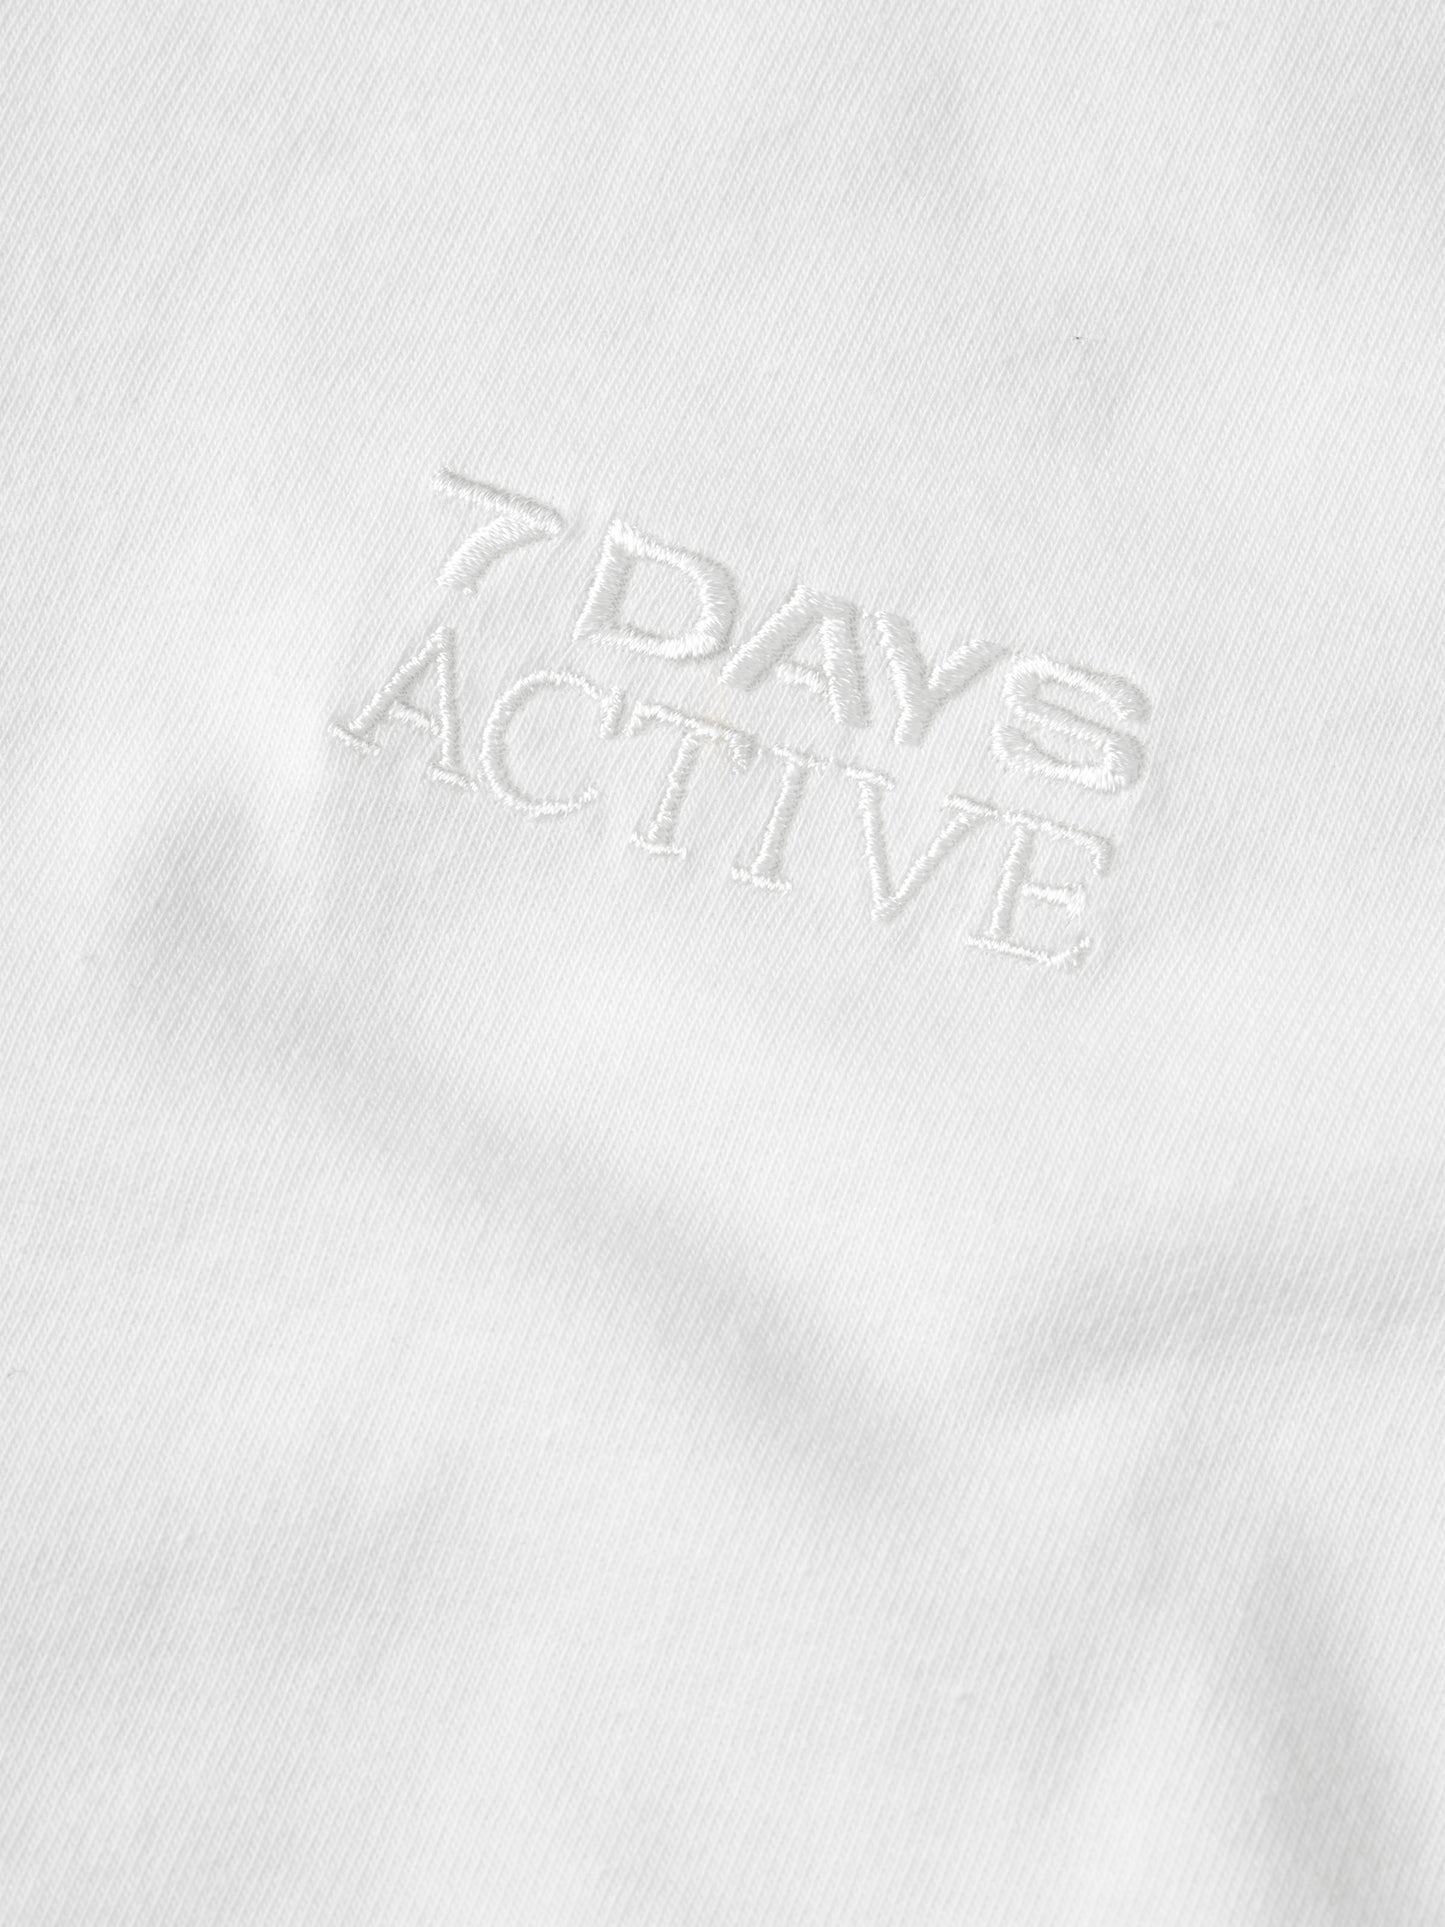 7 DAYS Organic Logo Fitted Tee T-shirt S/S 050 White Alyssum